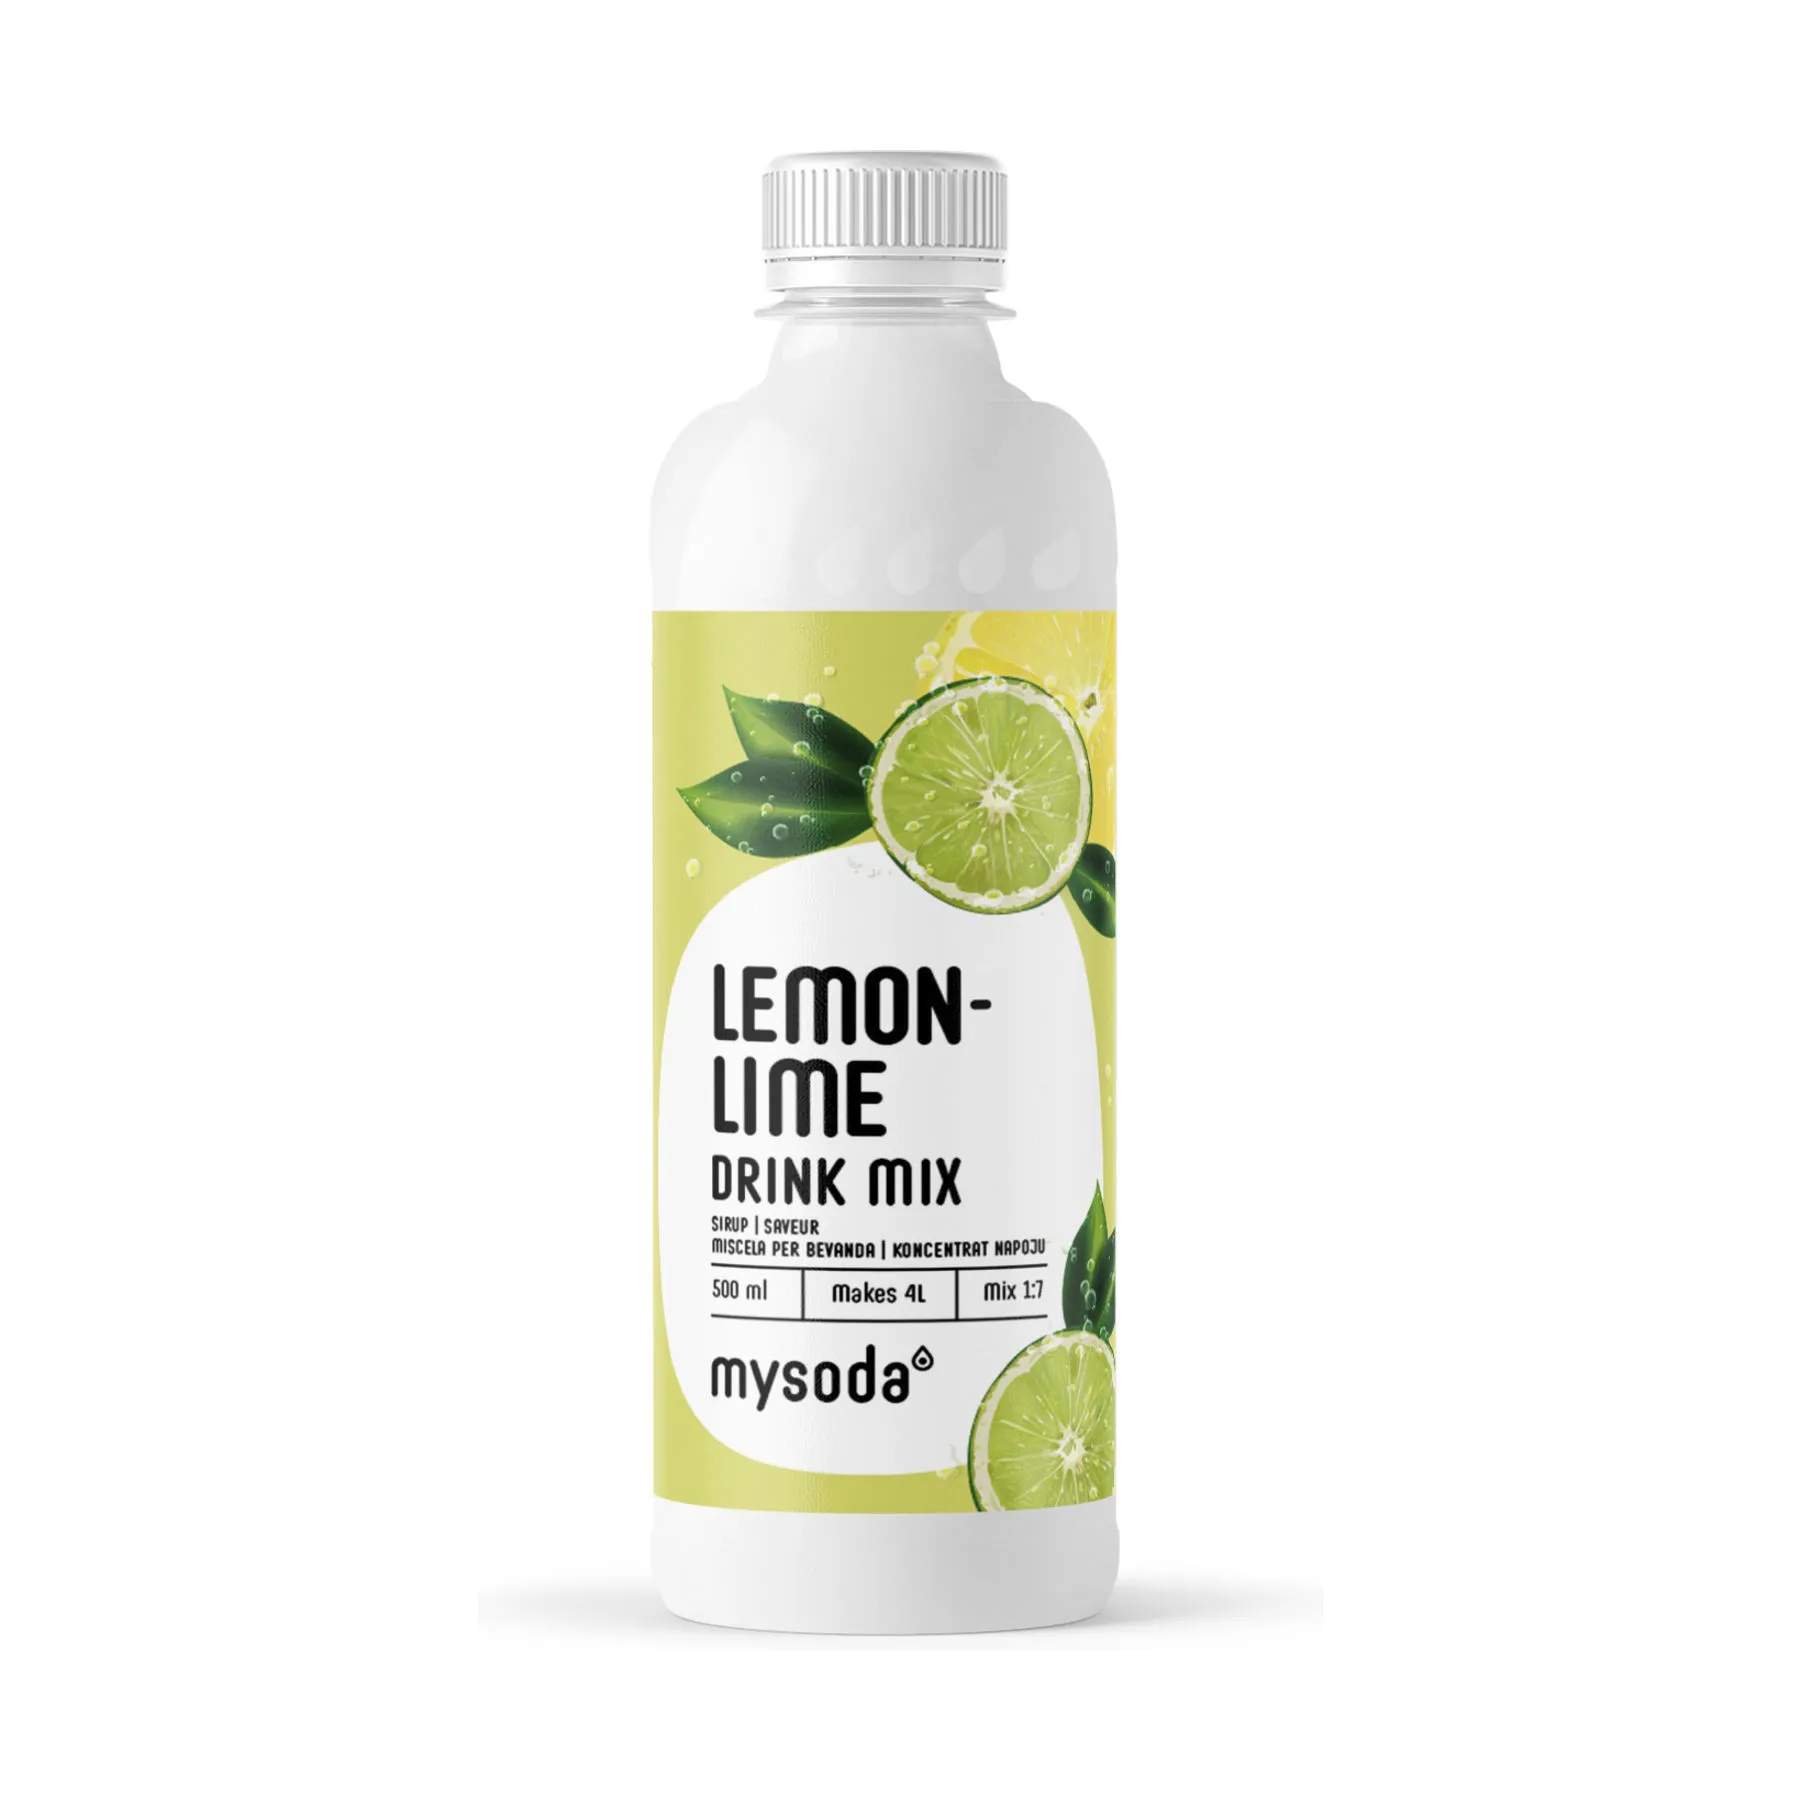 Drink Mix - Lemon-Lime, hvid, large